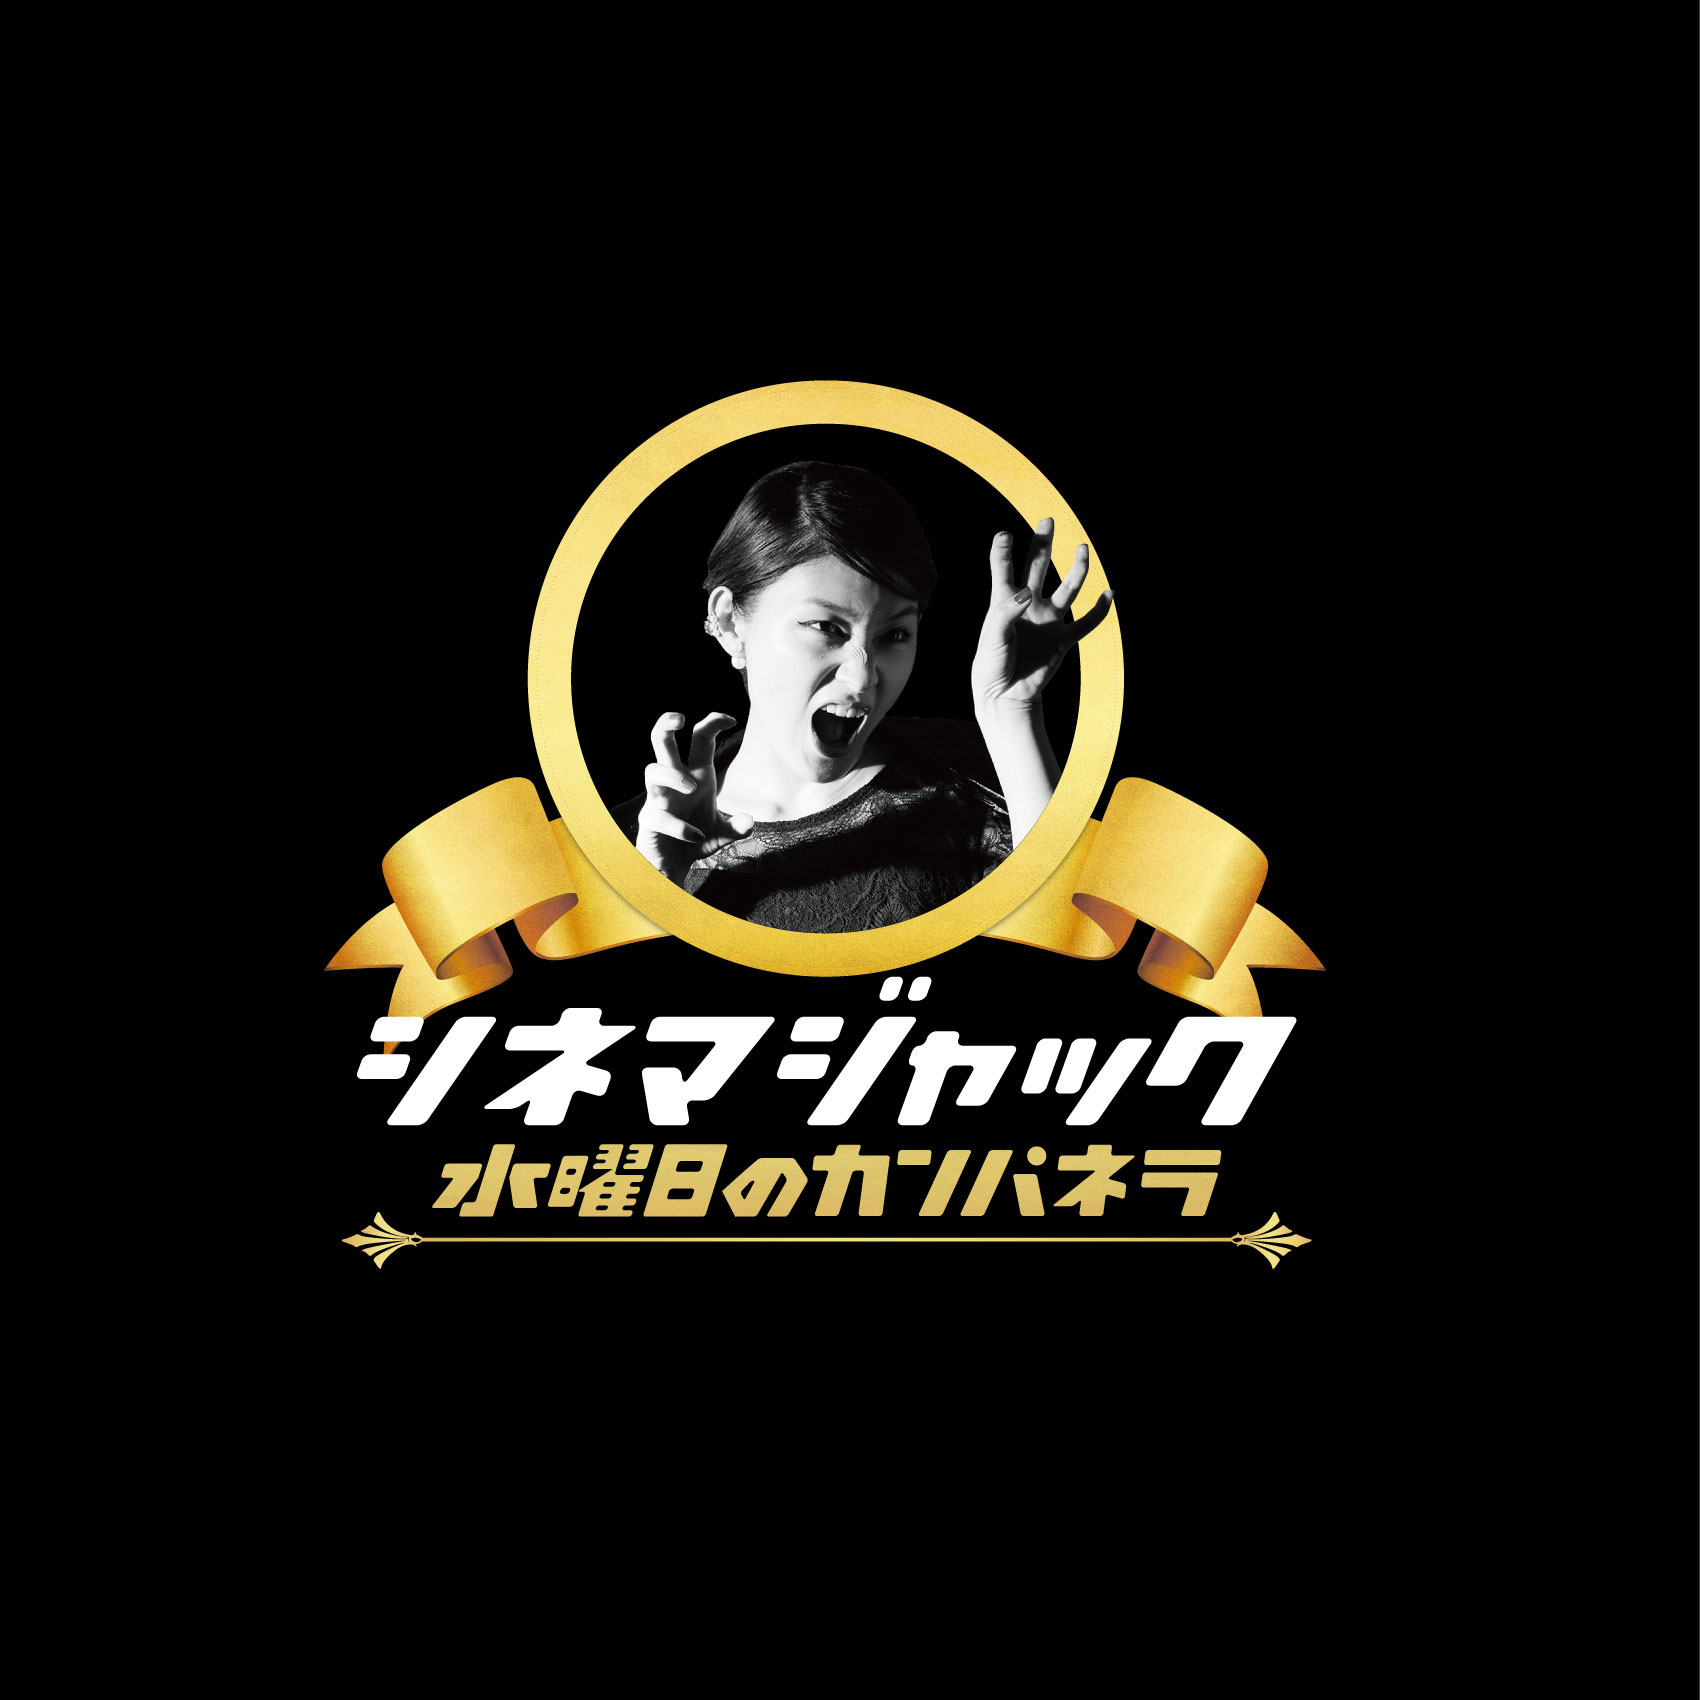 水曜日のカンパネラ (すいようびのカンパネラ) 3rdアルバム『シネマジャック』(2014年3月19日) 高画質ジャケット画像